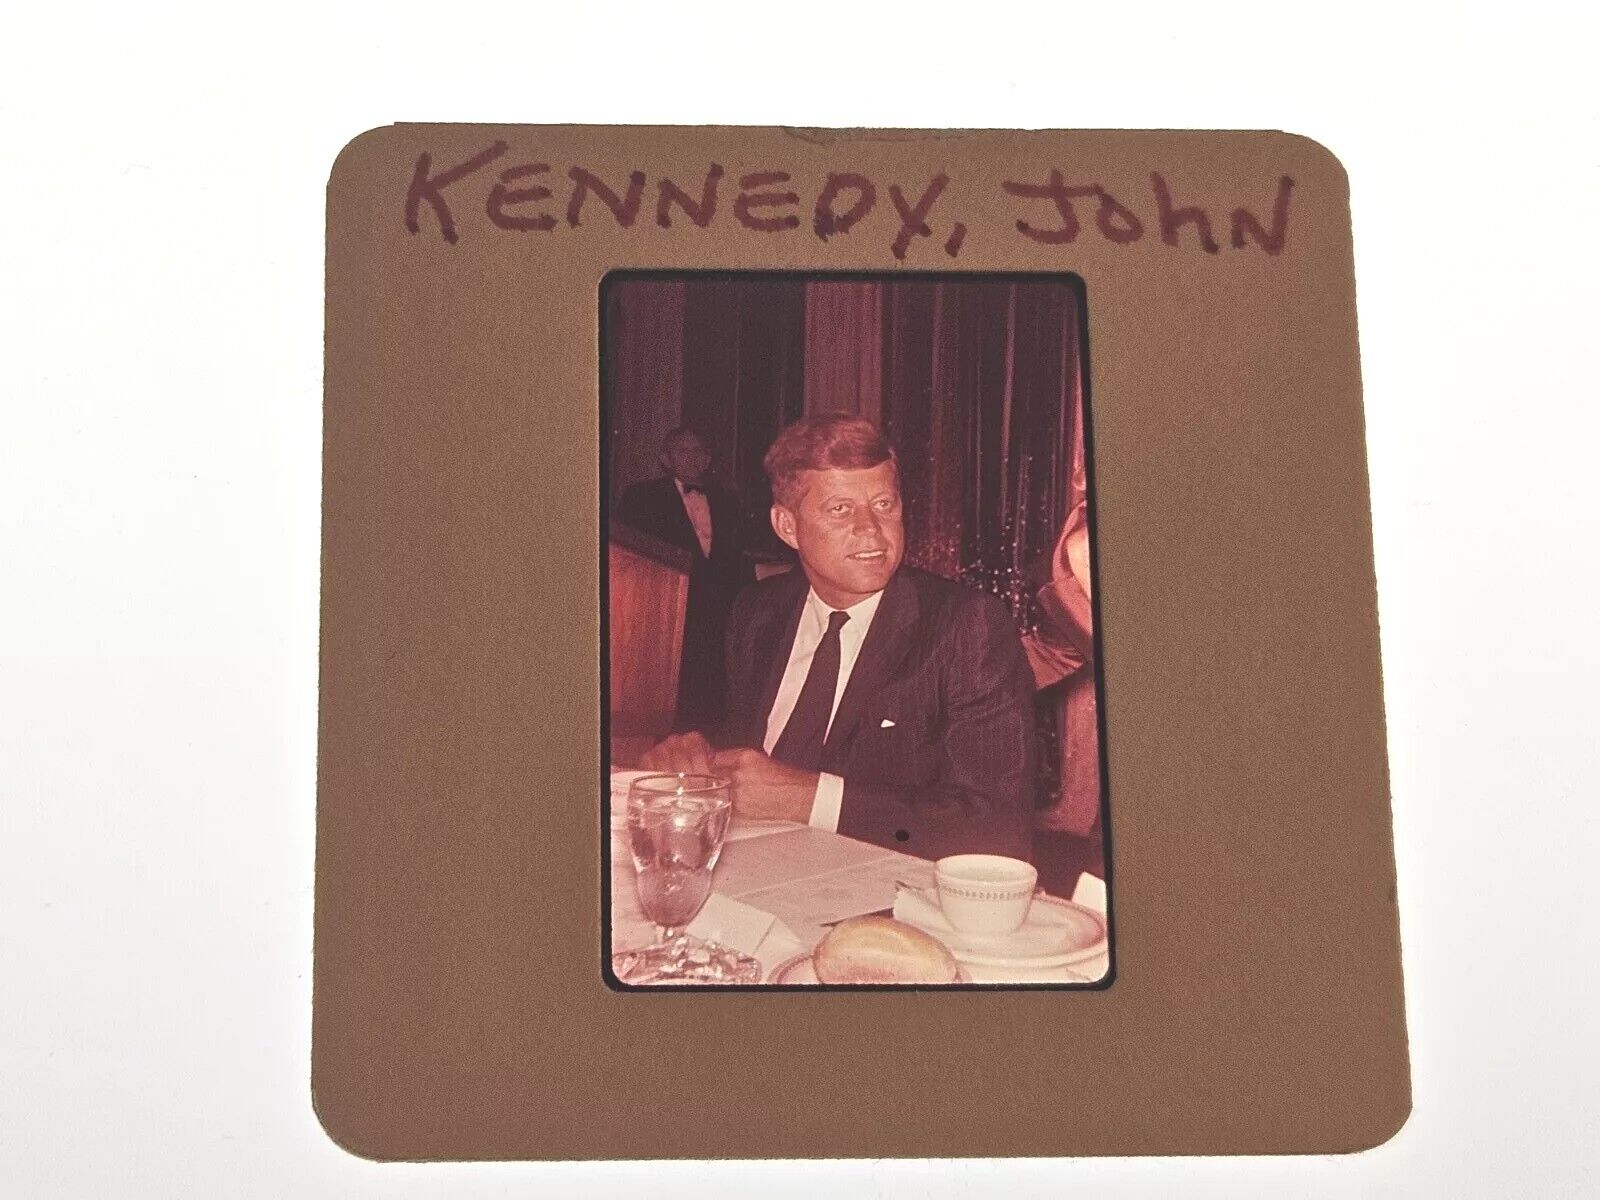 JOHN KENNEDY PHOTO 35MM FILM SLIDE